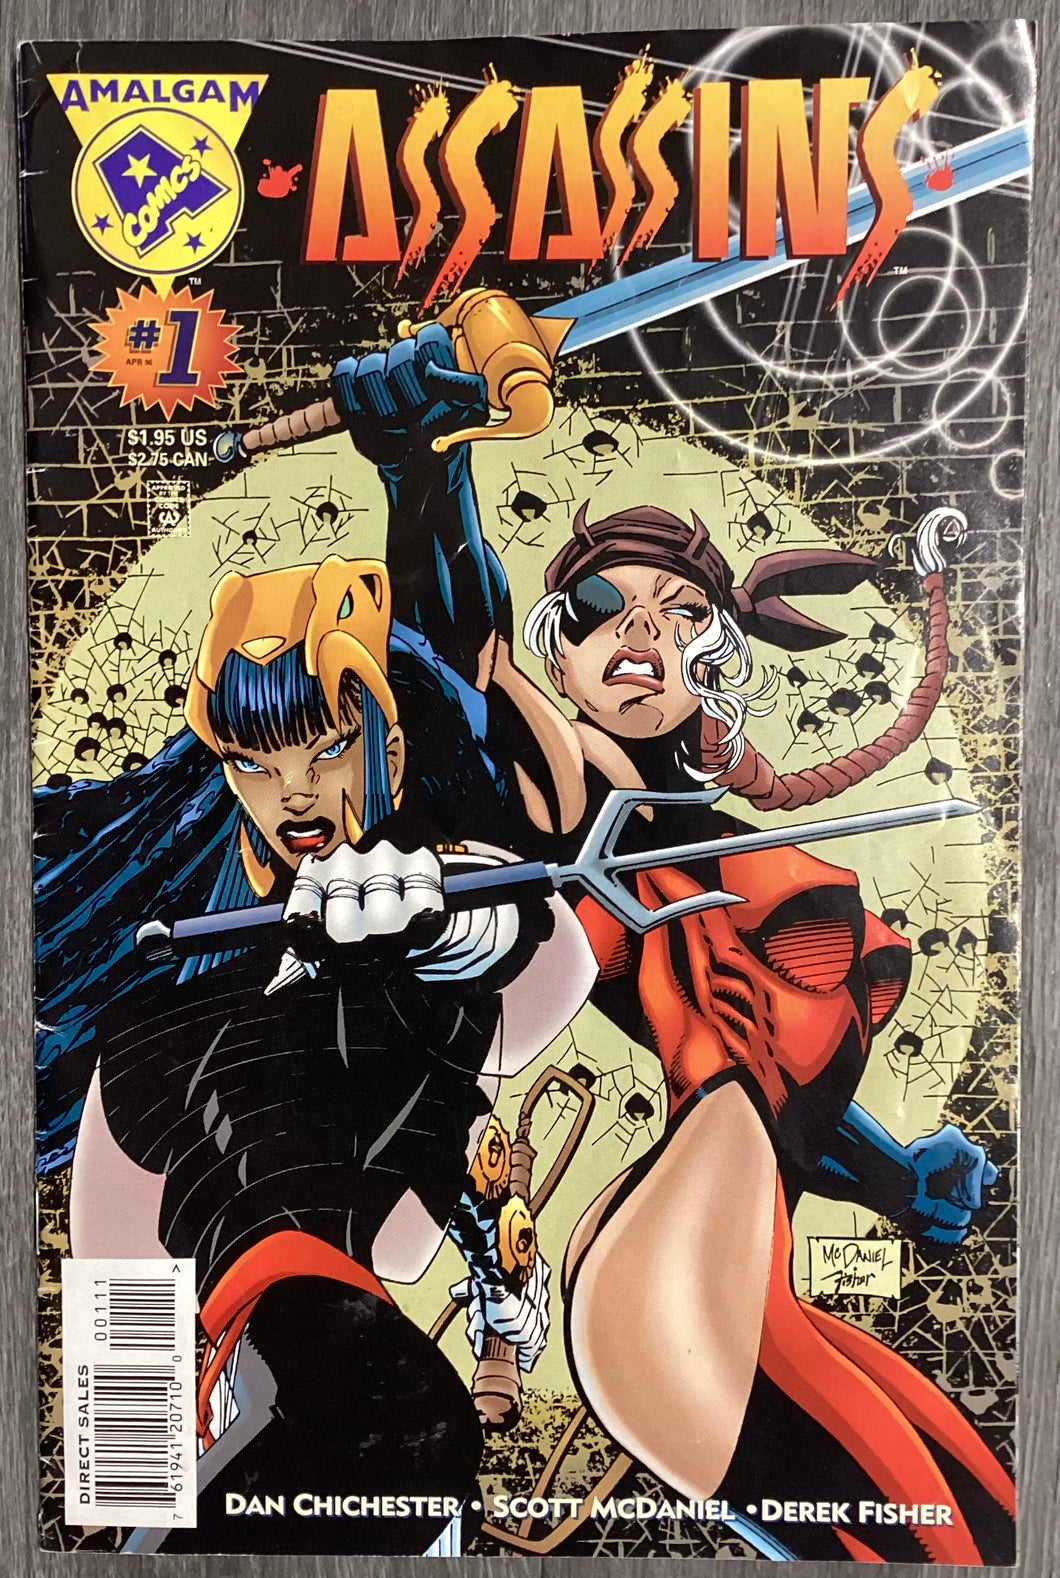 Assassins No. #1 1996 Amalgam/DC/Marvel Comics